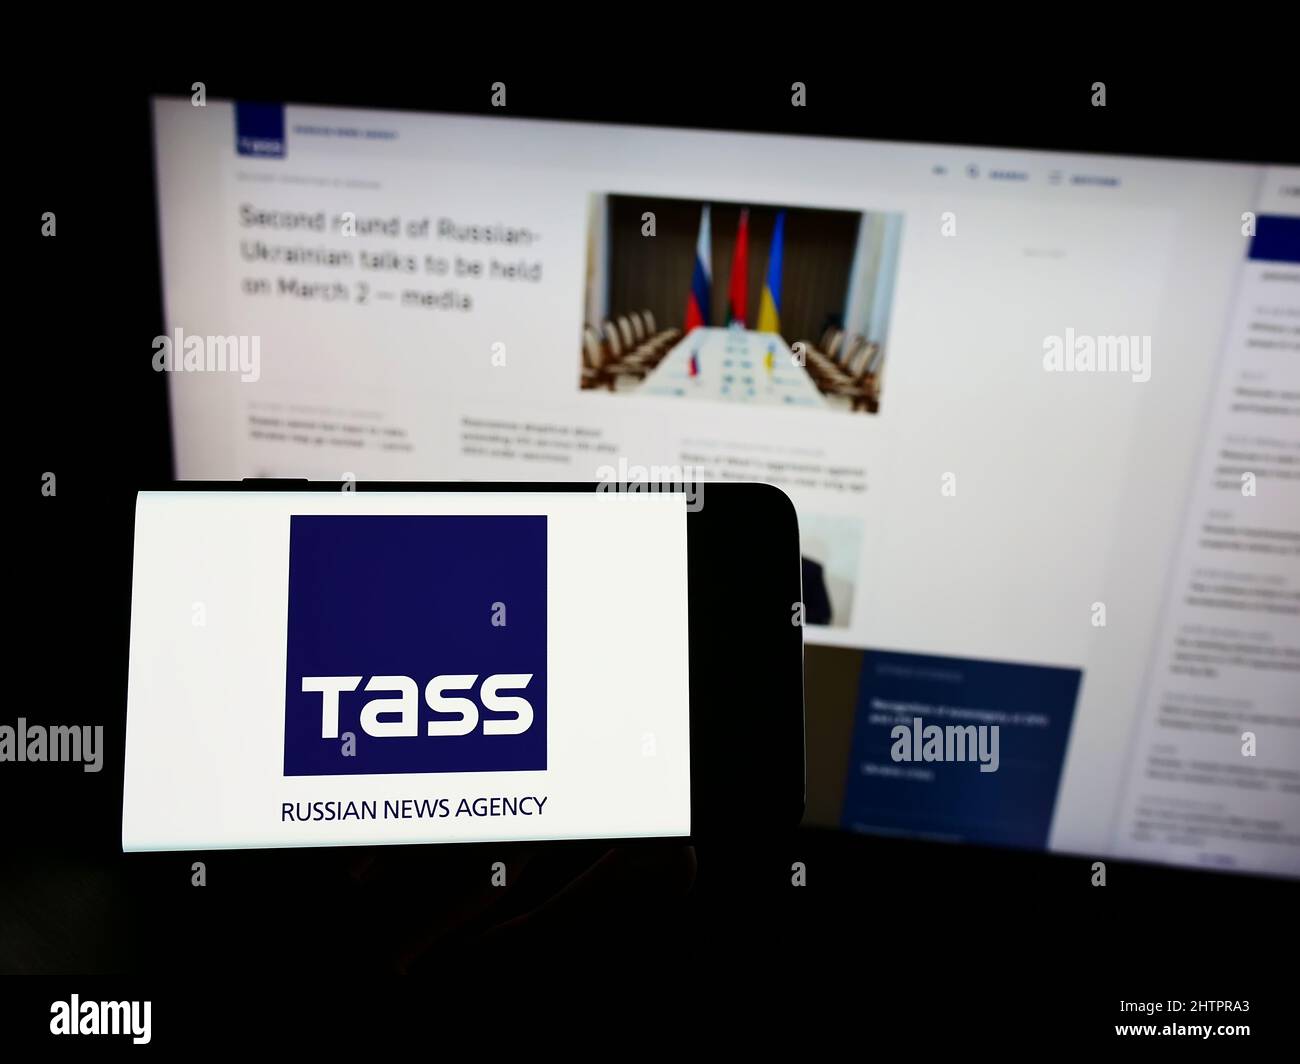 Personne tenant un téléphone portable avec le logo de l'agence de presse russe TASS (TACC) à l'écran en face de la page Web d'affaires. Mise au point sur l'affichage du téléphone. Banque D'Images